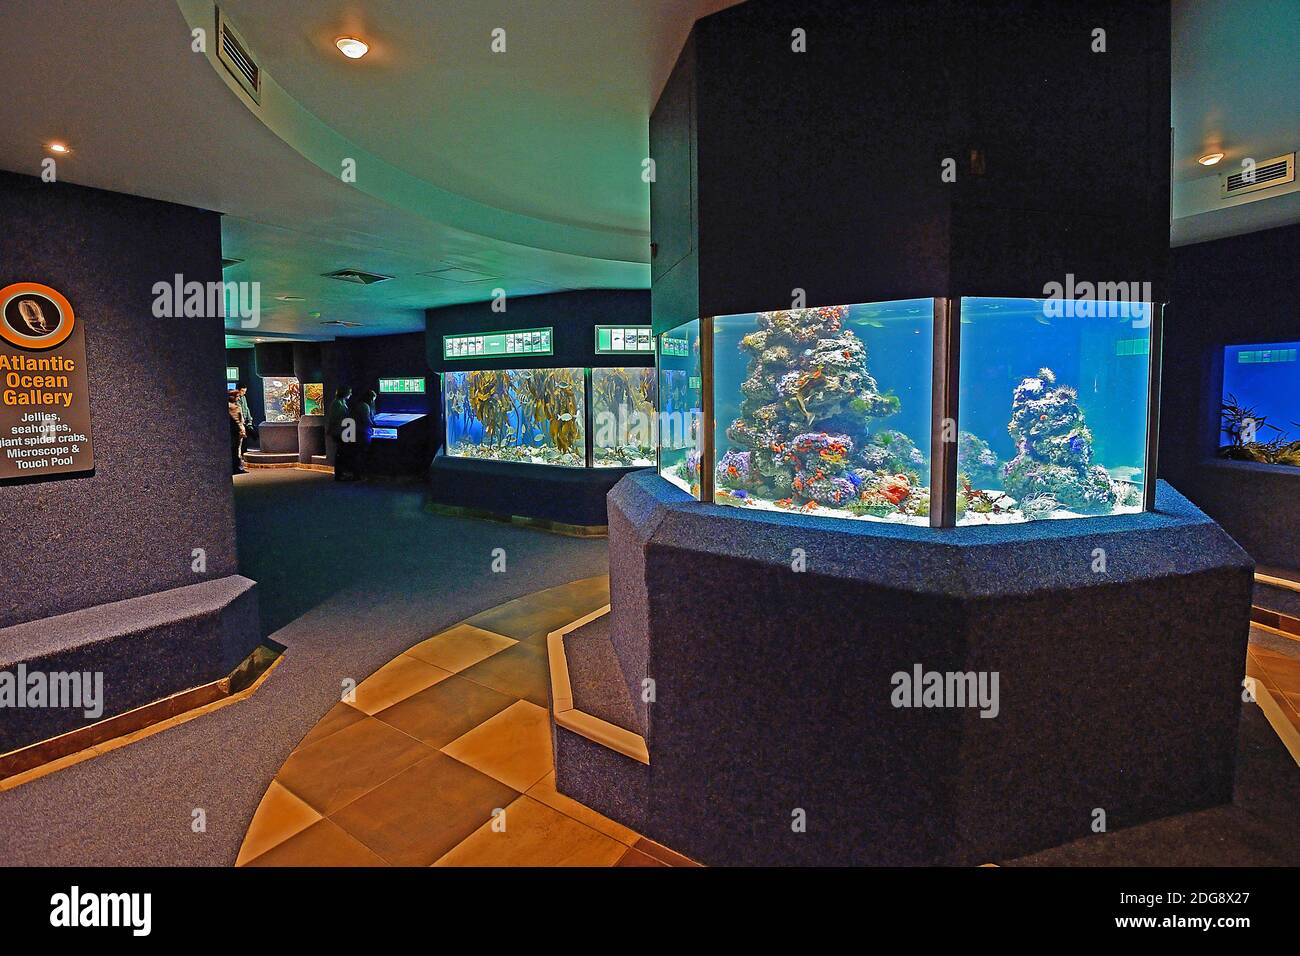 Innenaufnahme des 2 Ocean Aquarium, Kapstadt, West Kap, Western Cape, Südafrika, Afrika Foto Stock